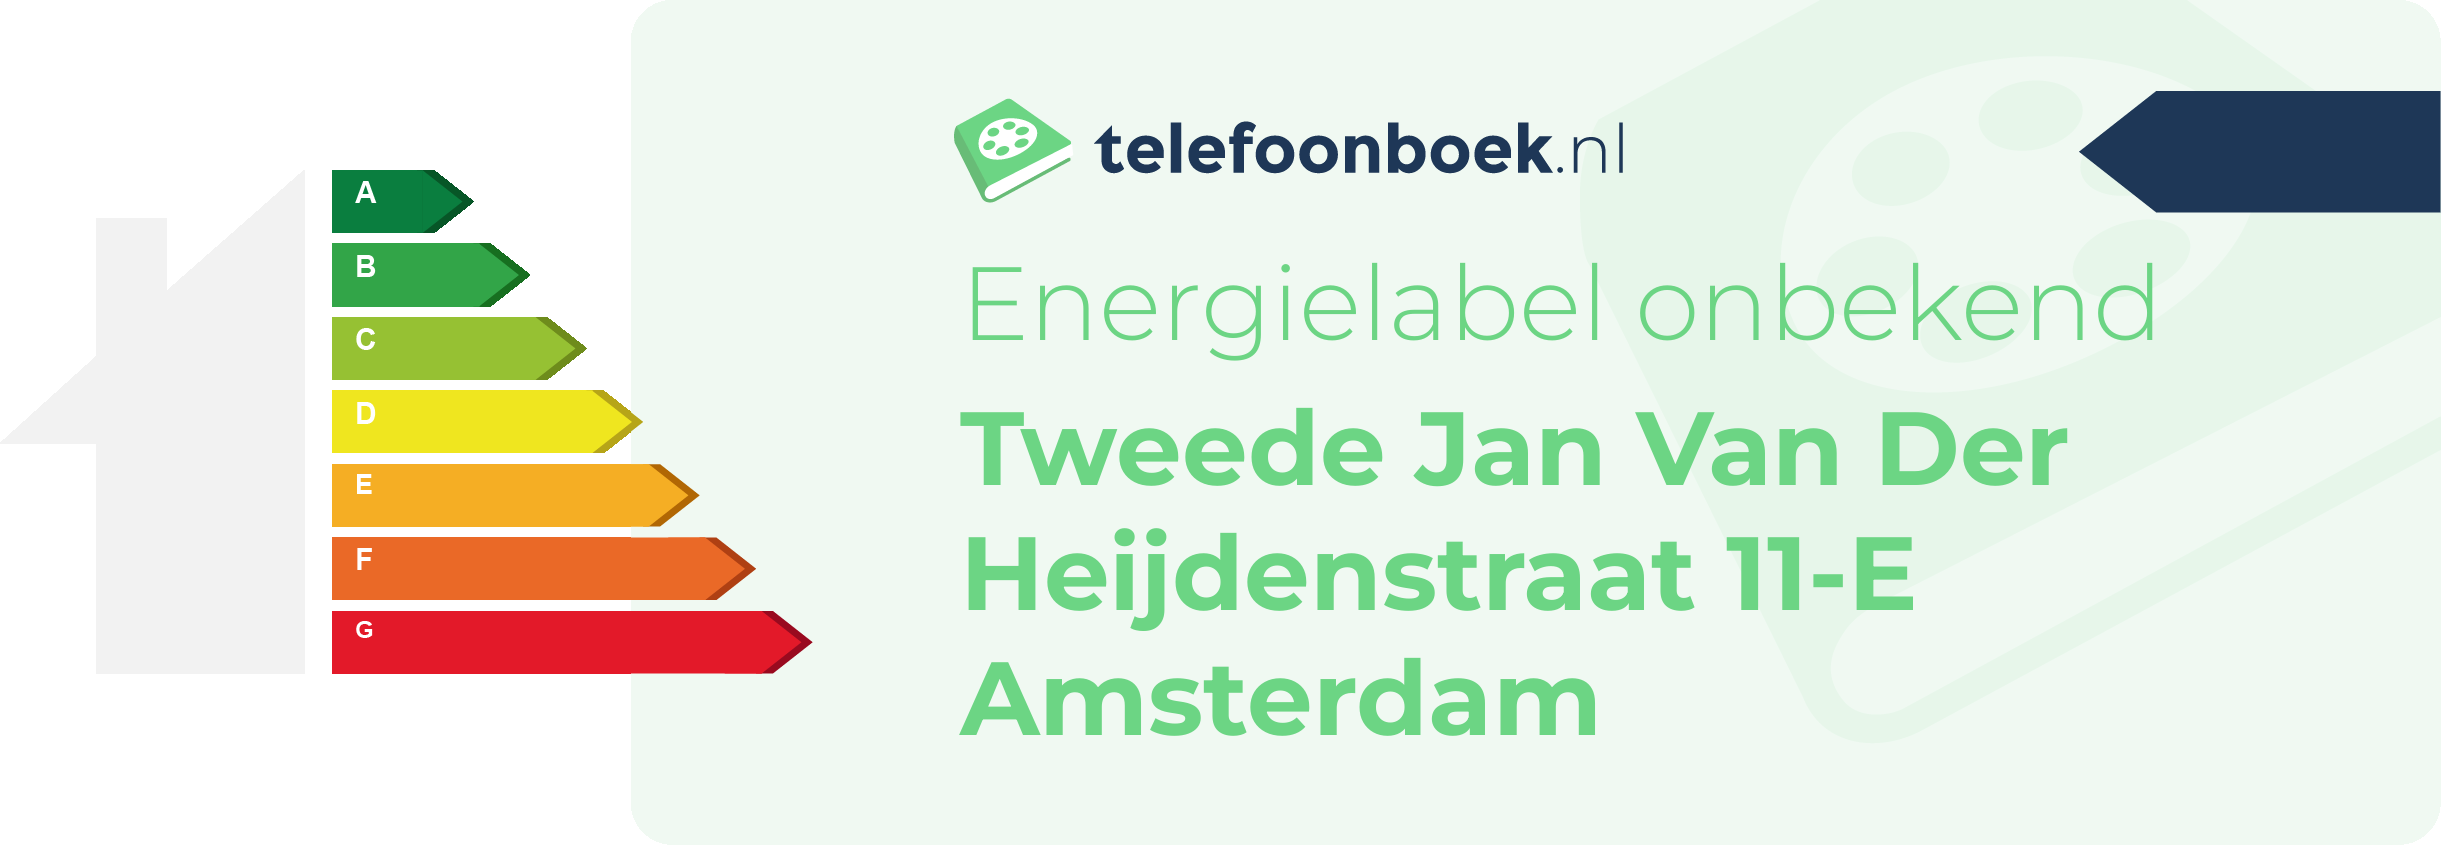 Energielabel Tweede Jan Van Der Heijdenstraat 11-E Amsterdam